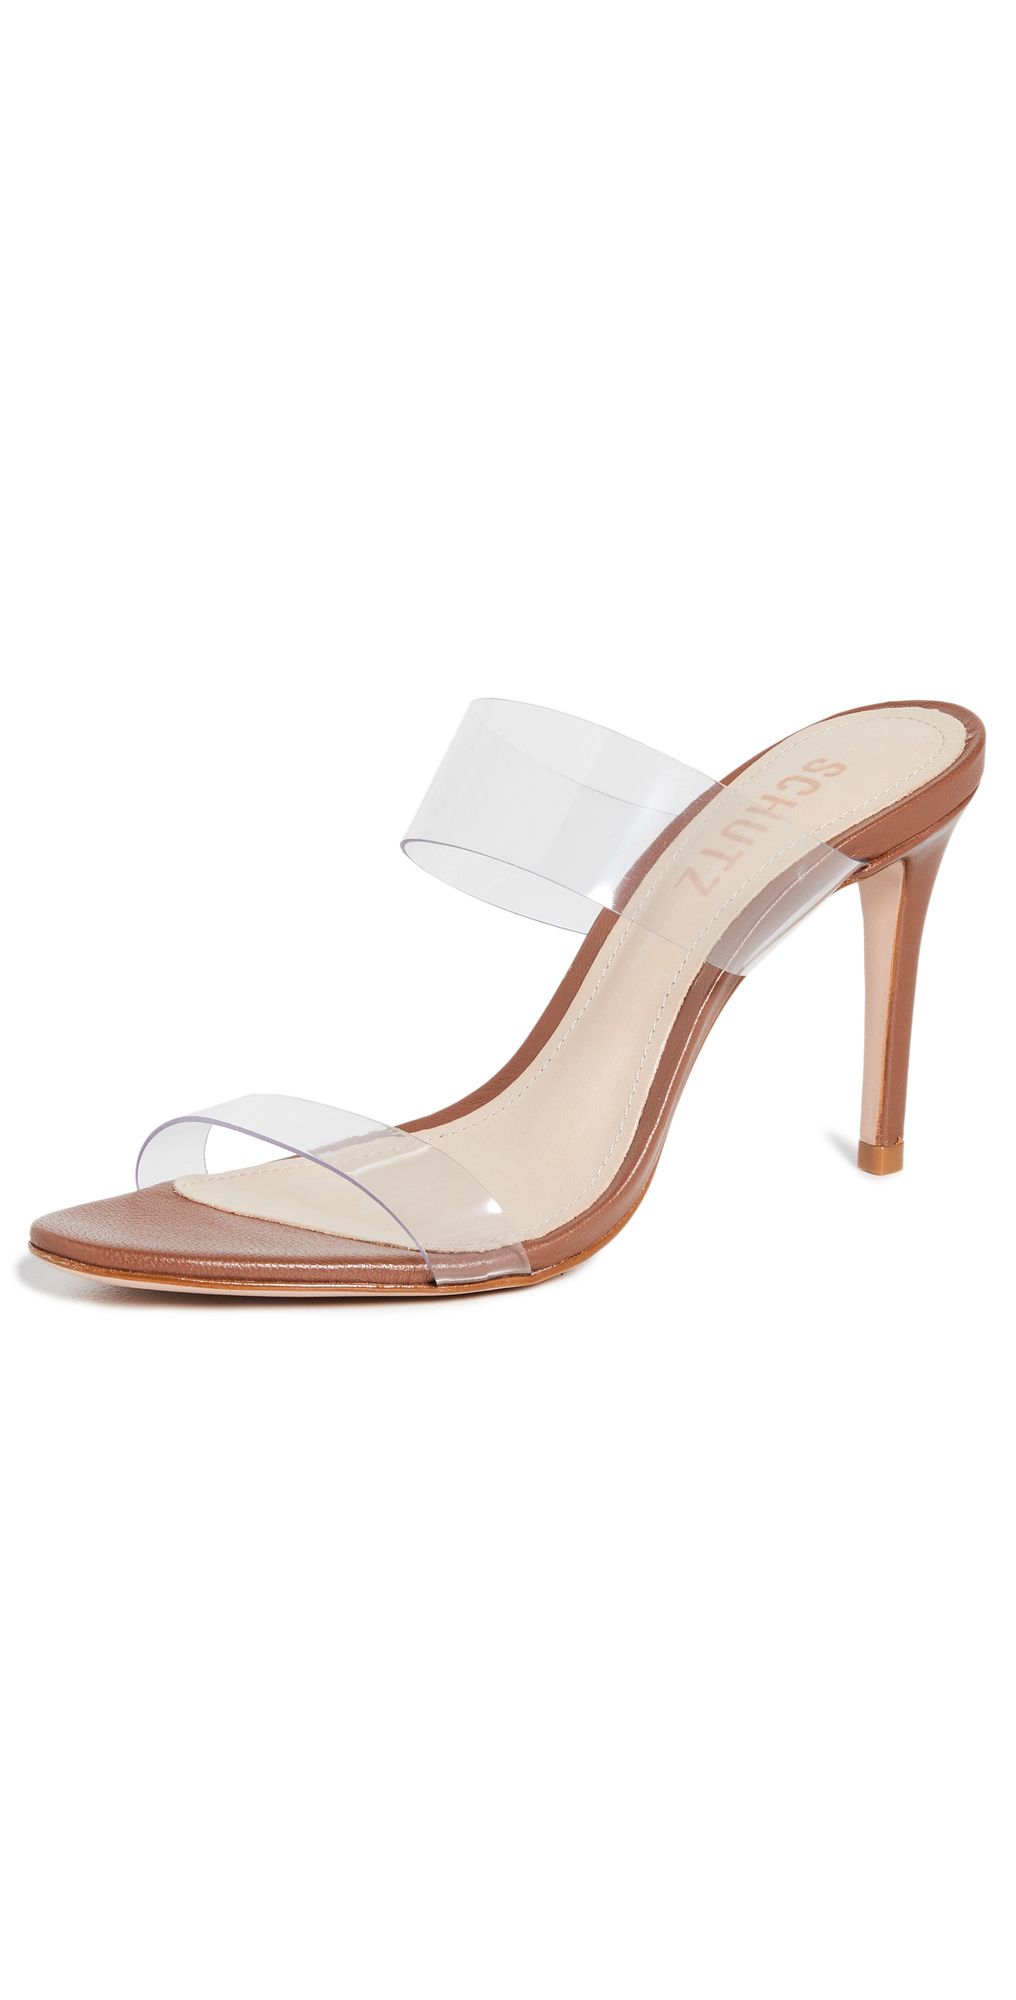 Schutz Ariella Sandals | Shopbop